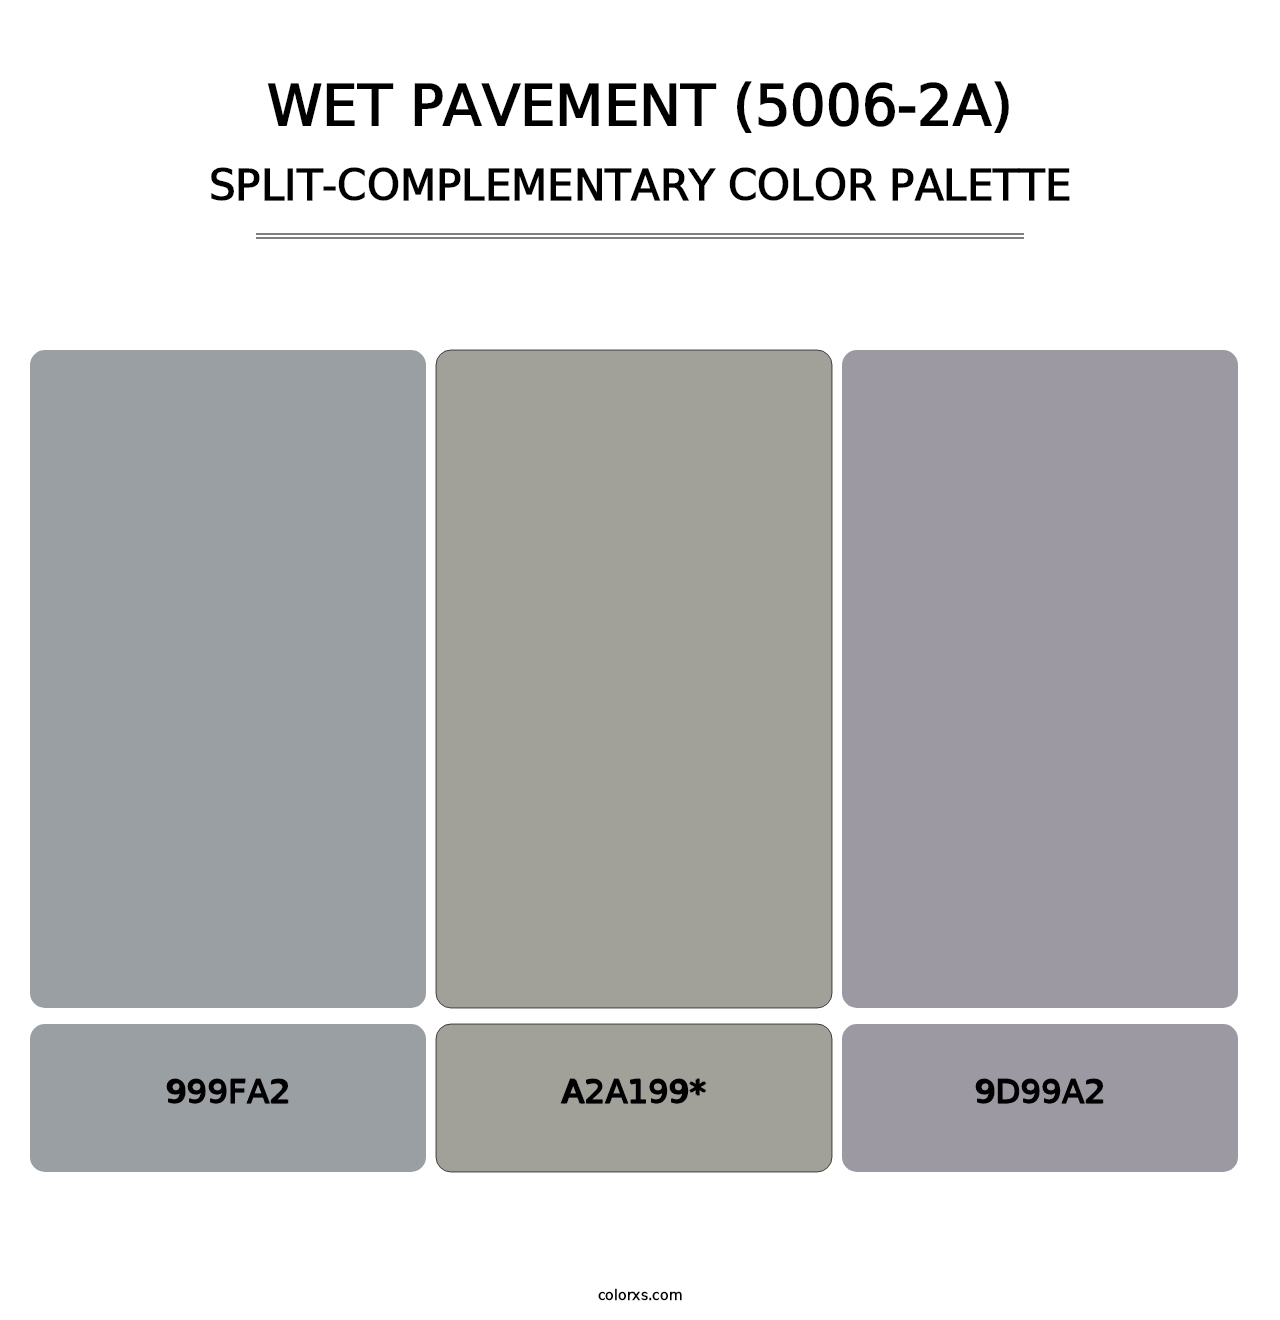 Wet Pavement (5006-2A) - Split-Complementary Color Palette